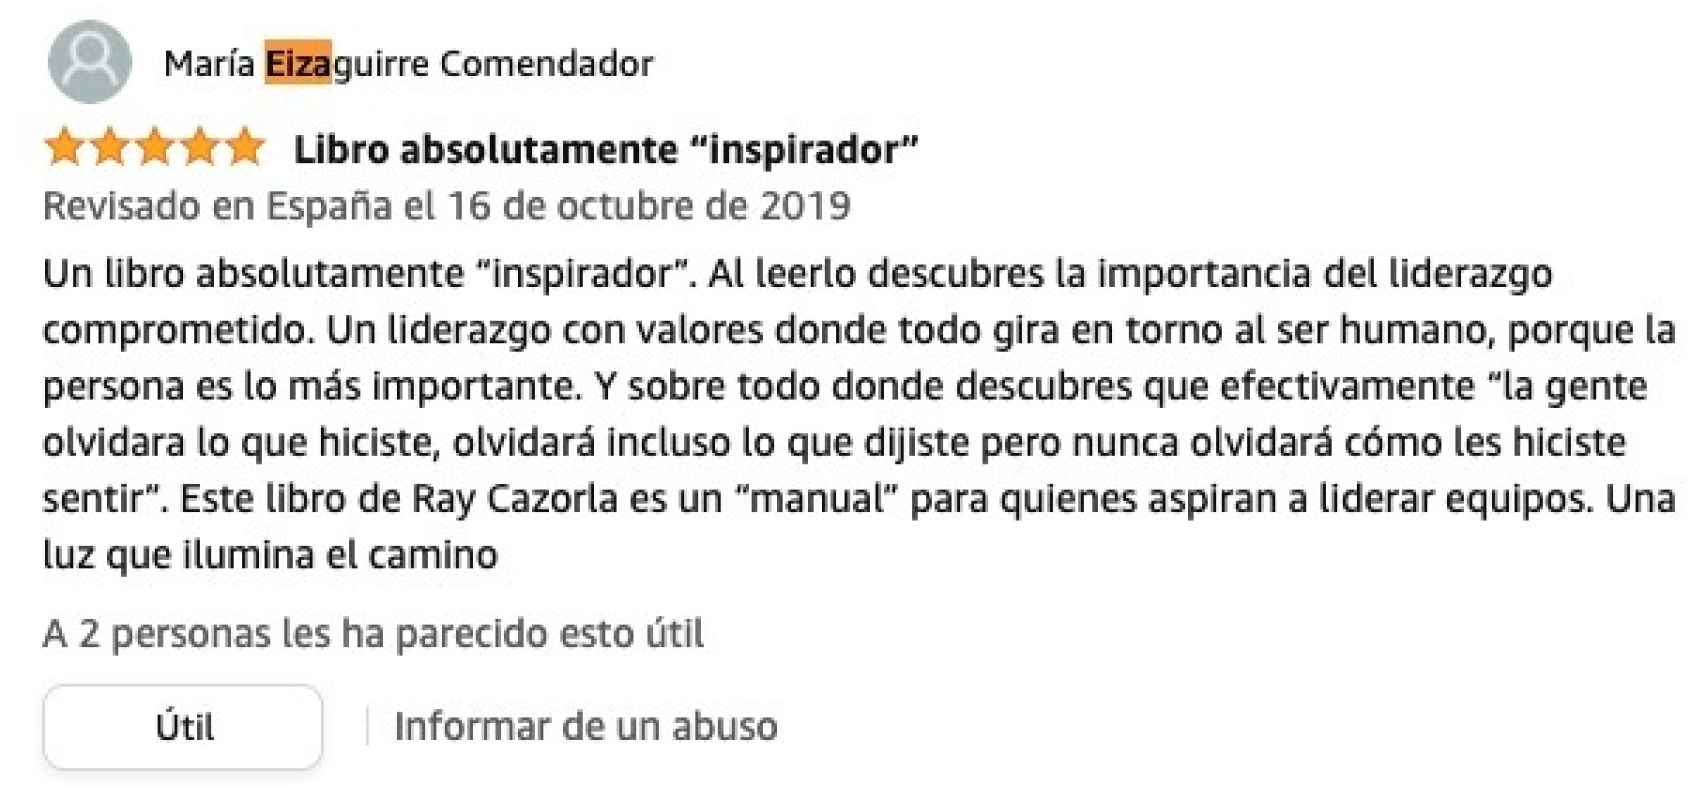 Comentario de María Eizaguirre en Amazon.